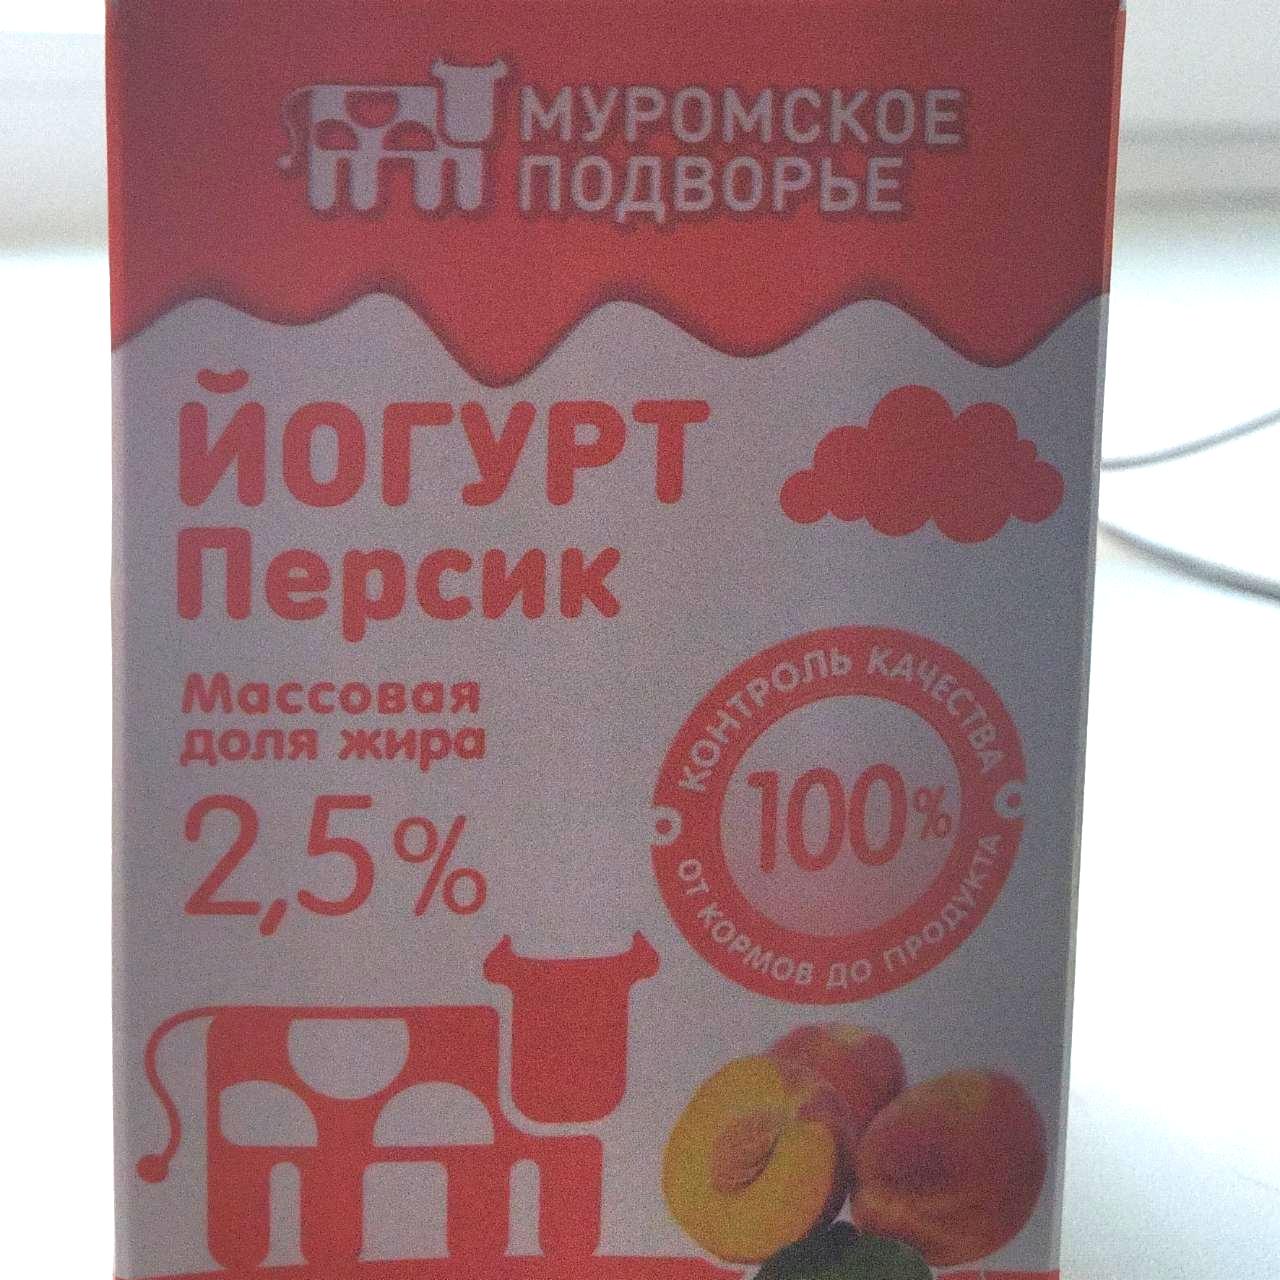 Фото - Йогурт персик 2.5% Муромское подворье